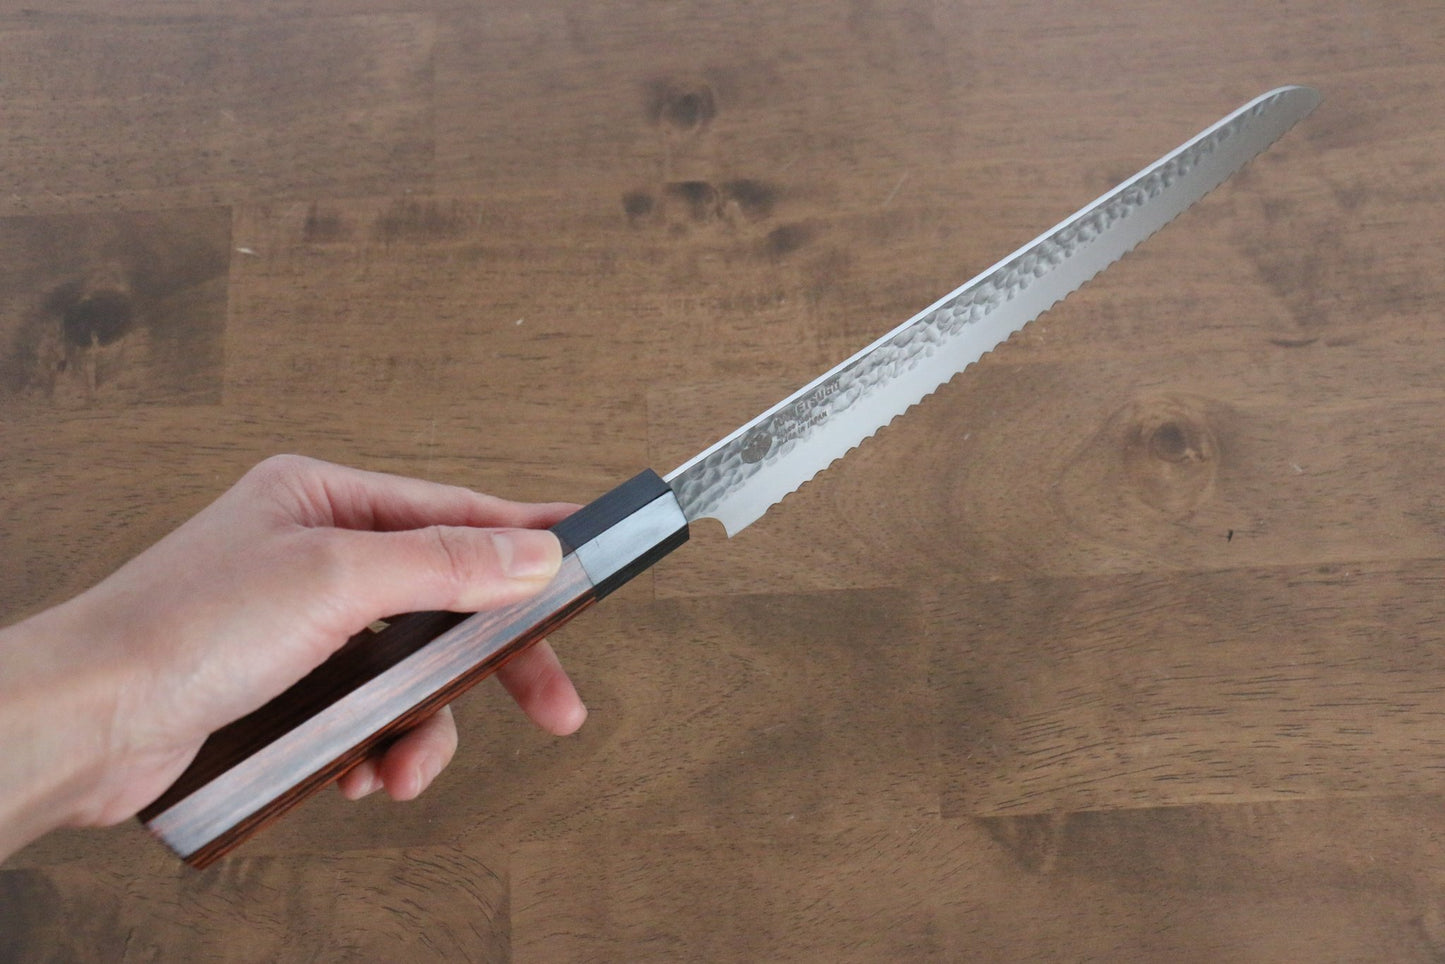 Marke Seki Kanetsugu Glattes Holz mit 7 Kanten VG2 handgeschmiedetes Messer Spezialisiertes Brotmesser Japanisches Messer 210 mm